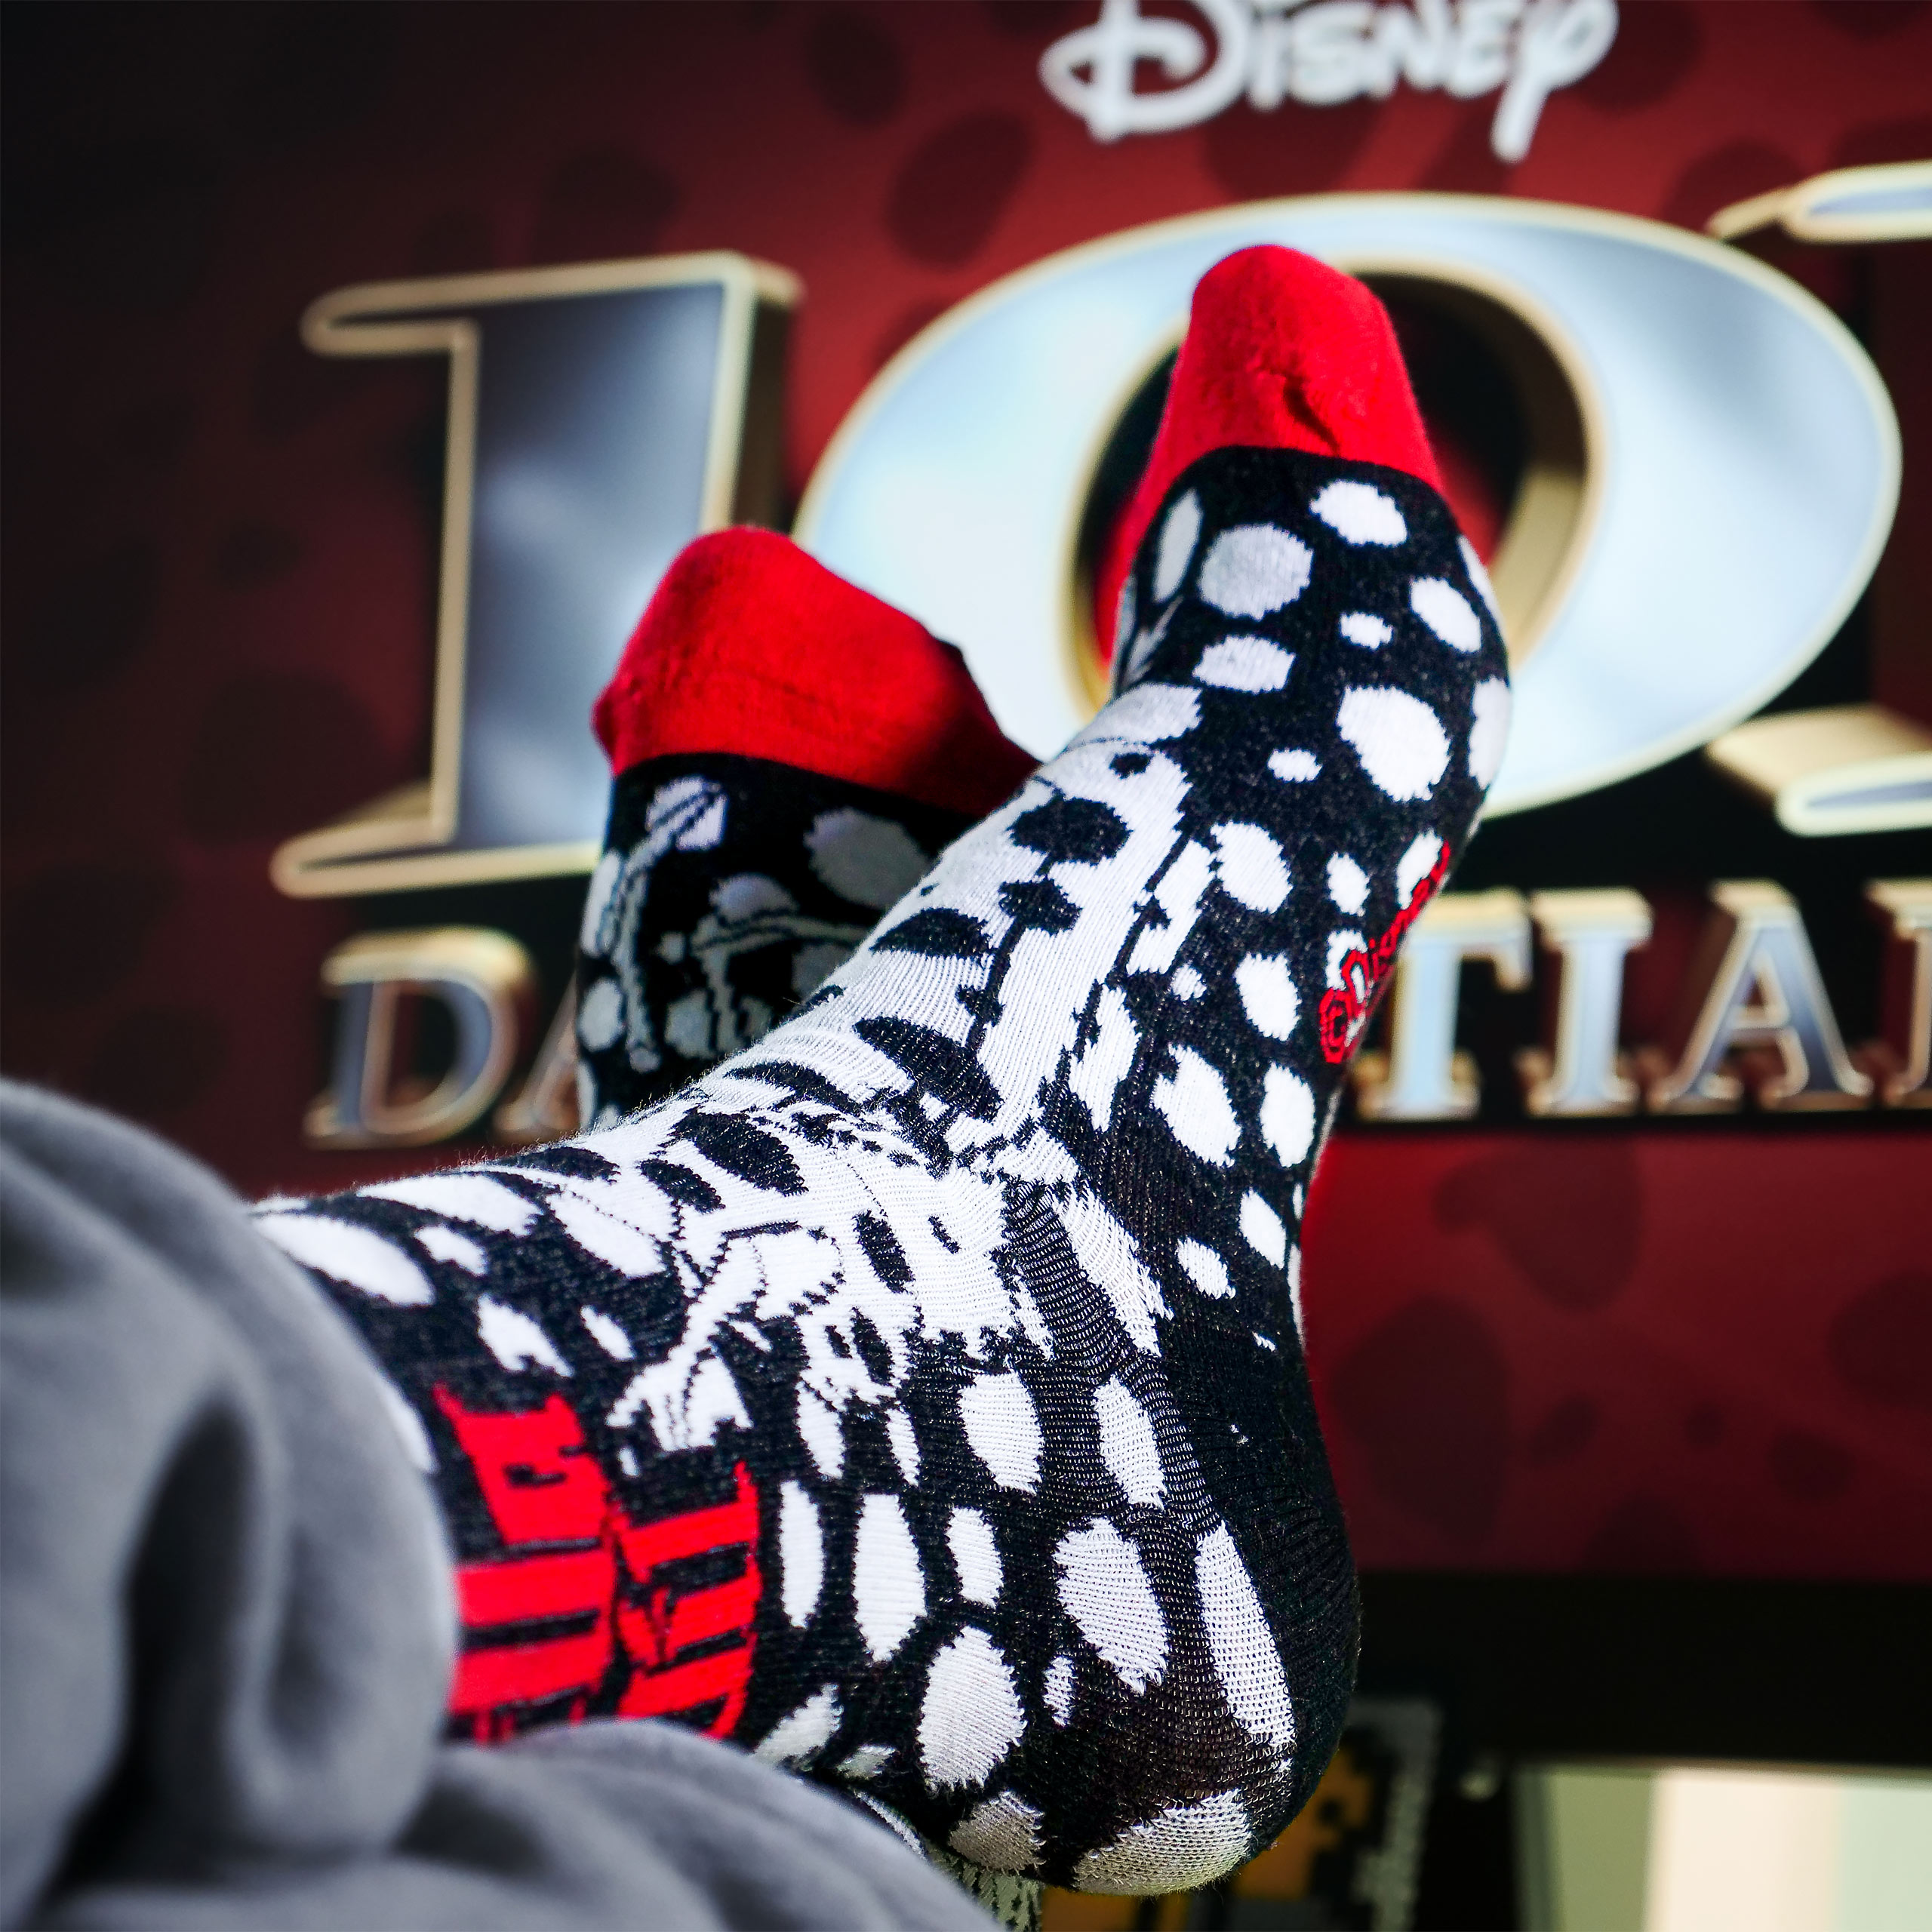 Disney Villains Socken 5er Set